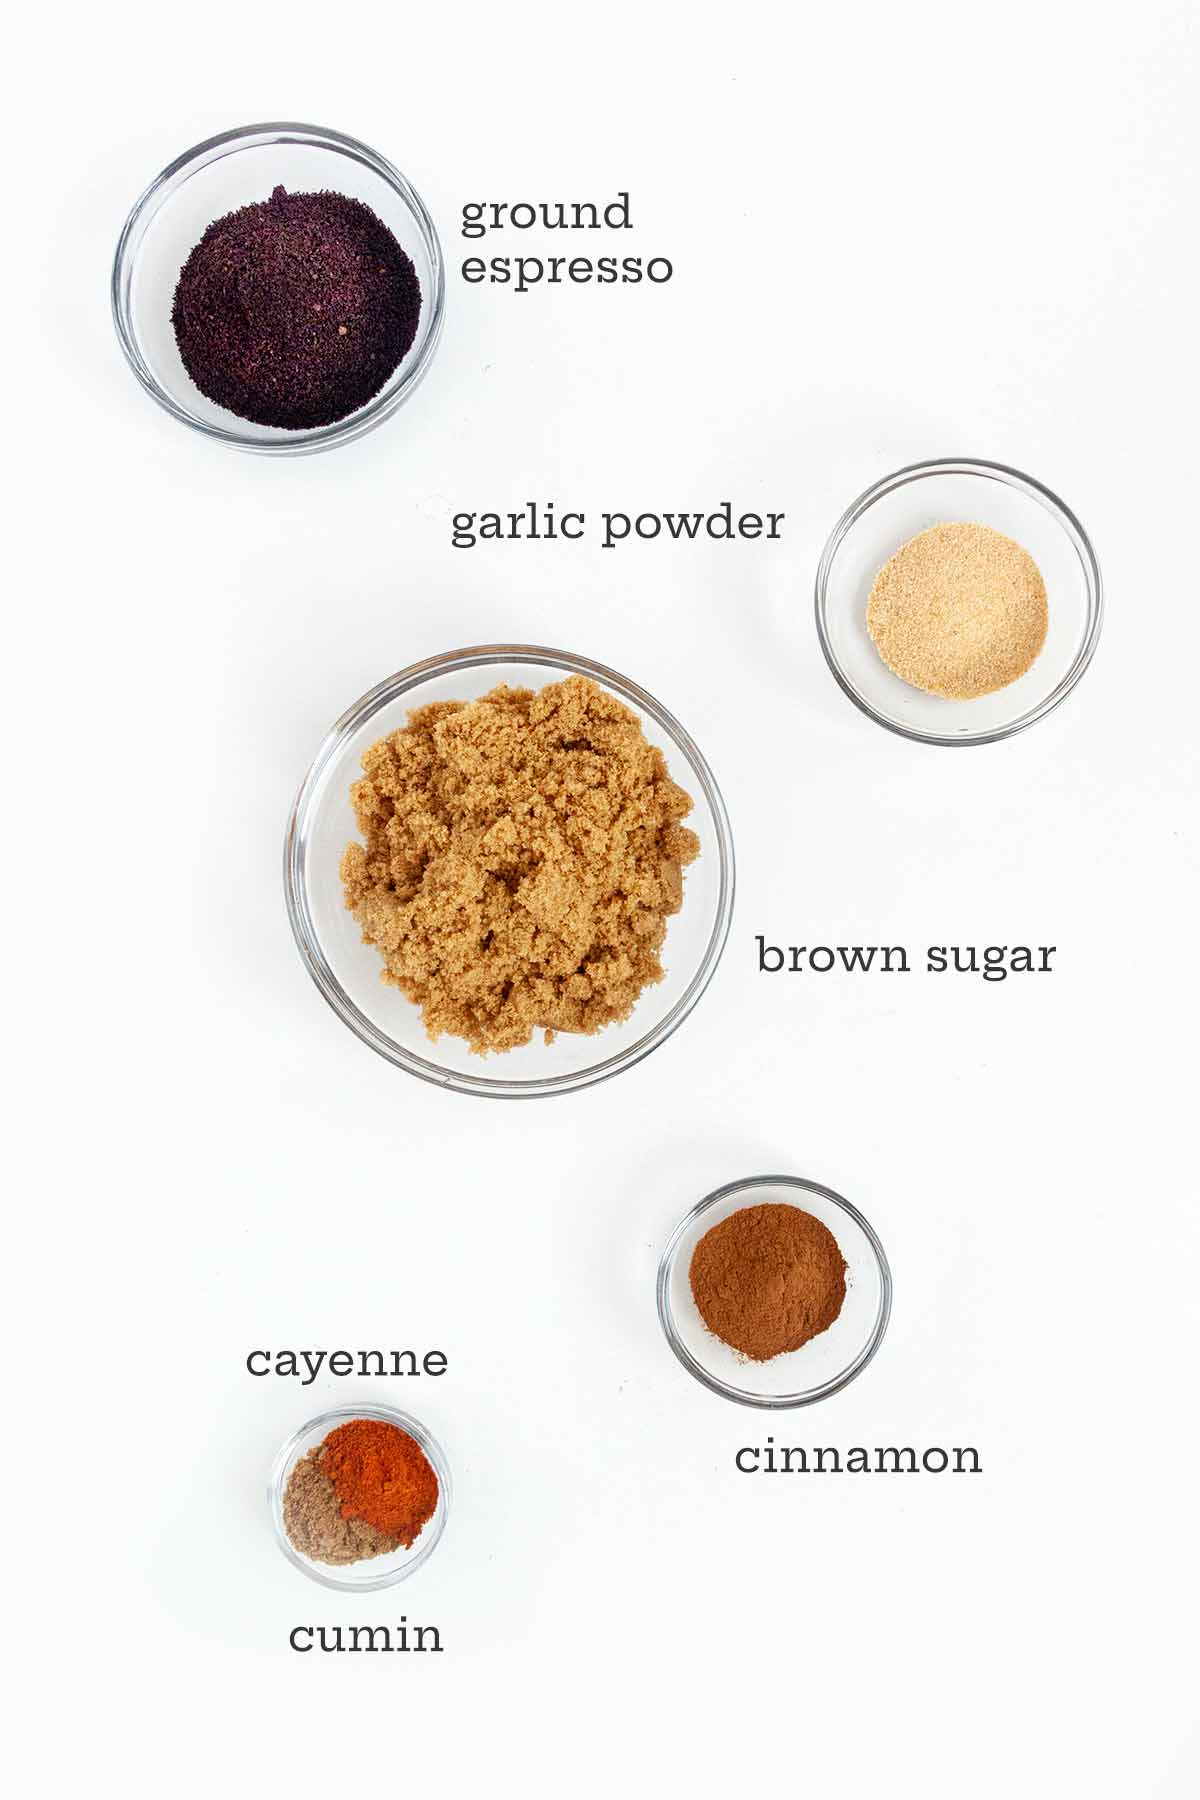 Ingredients for bbq dry rub -- ground espresso, garlic powder, brown sugar, cinnamon, cumin, and cayenne.